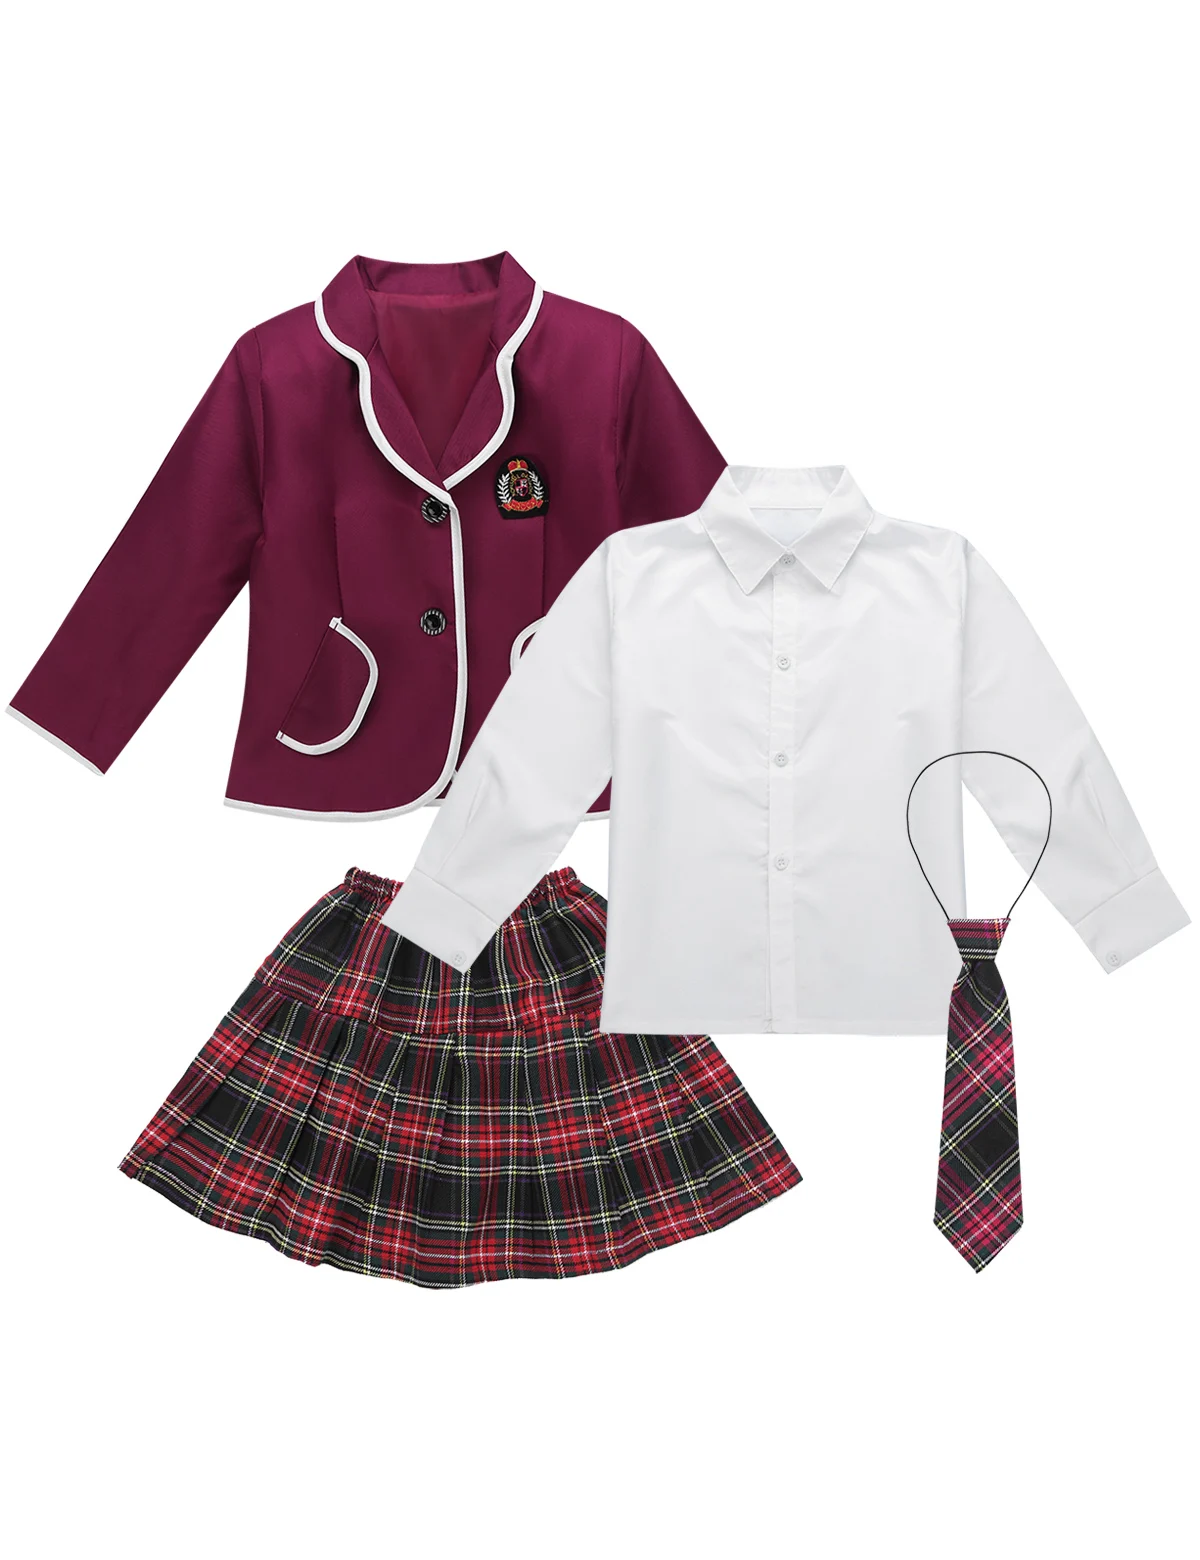 DPOIS/Детская школьная форма в британском стиле для девочек, детские костюмы из японского аниме одежда для хора, пальто, рубашка мини-юбка с галстуком